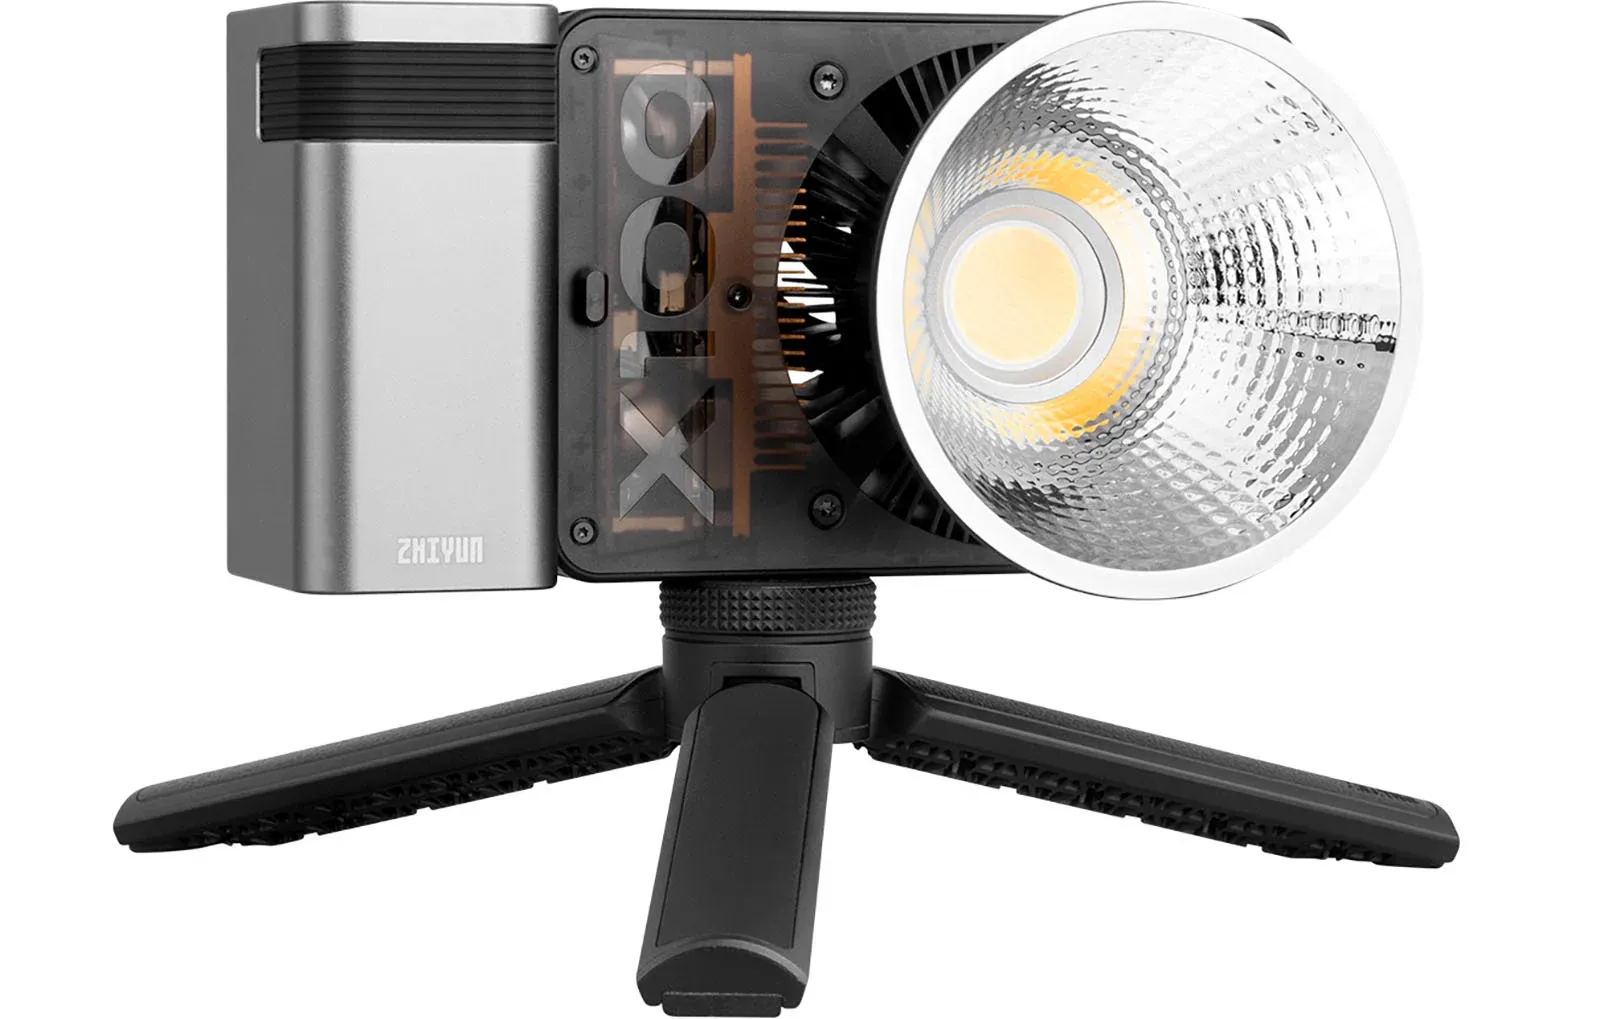 Zhiyun ra mắt đèn LED nhỏ gọn Molus G60 và X100 dành cho những nhà sáng tạo nội dung